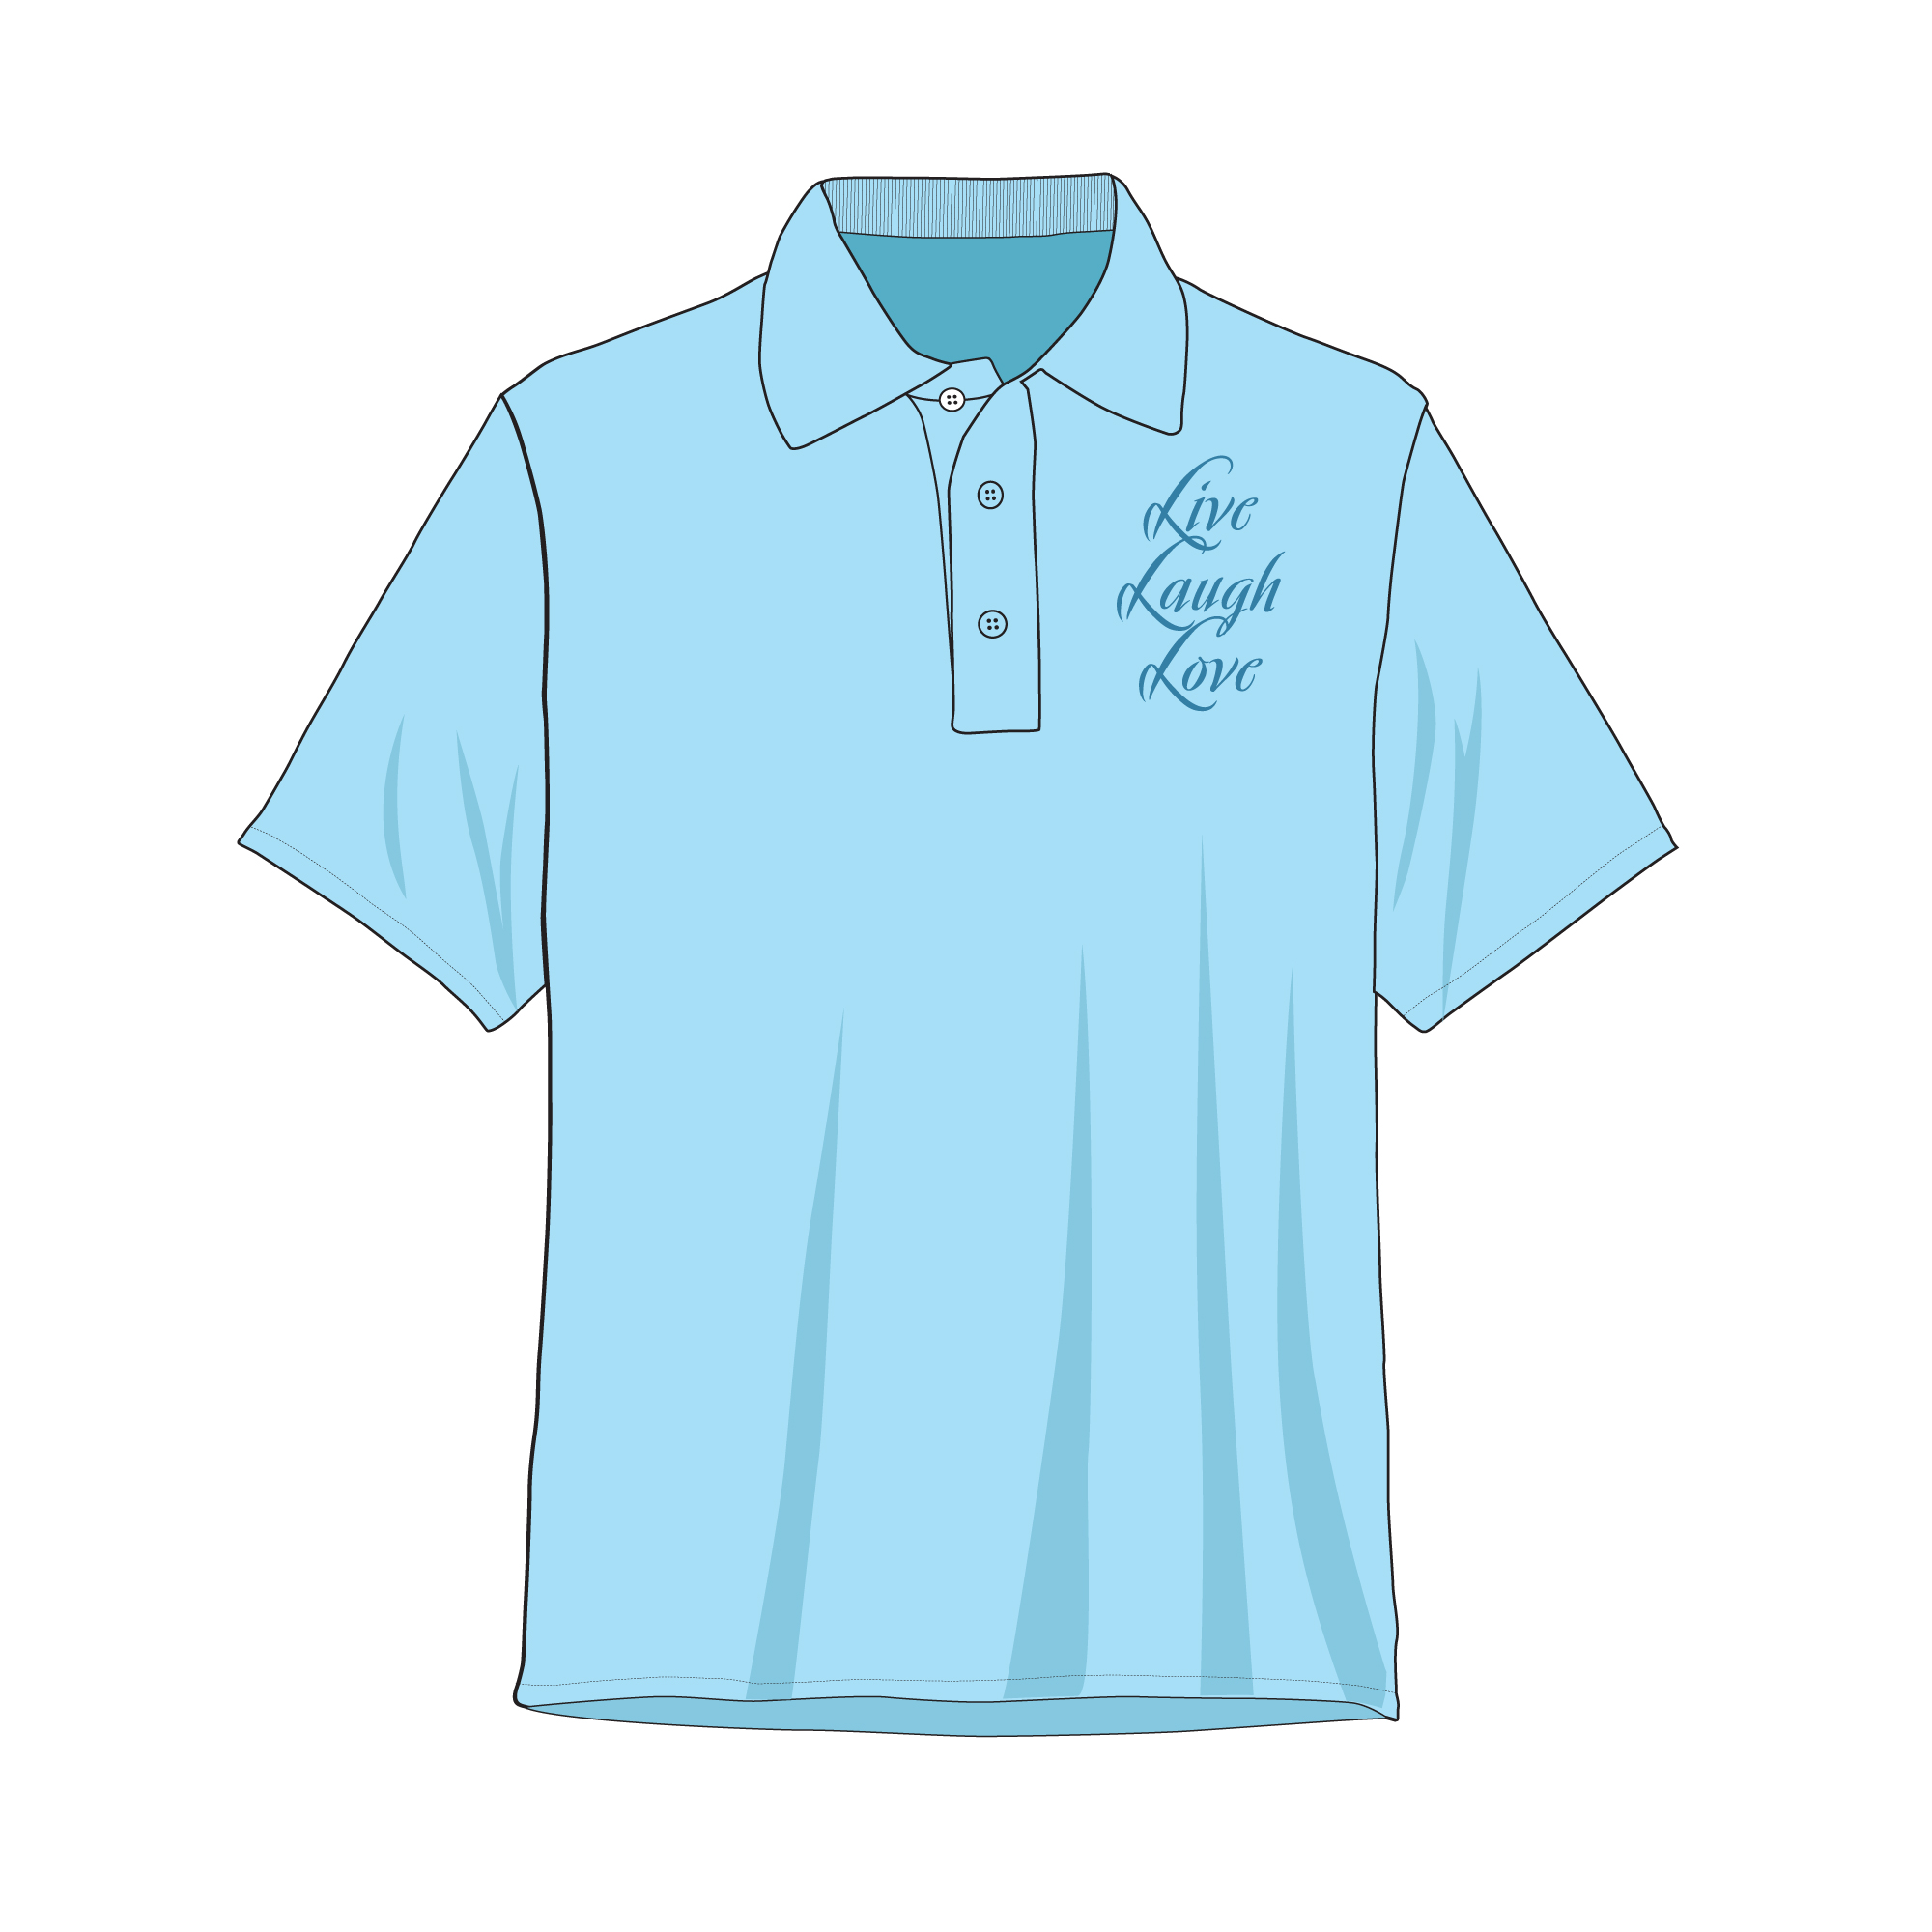  Golf  Polo  Shirt Mockup  and Template 8 Angles Layered 